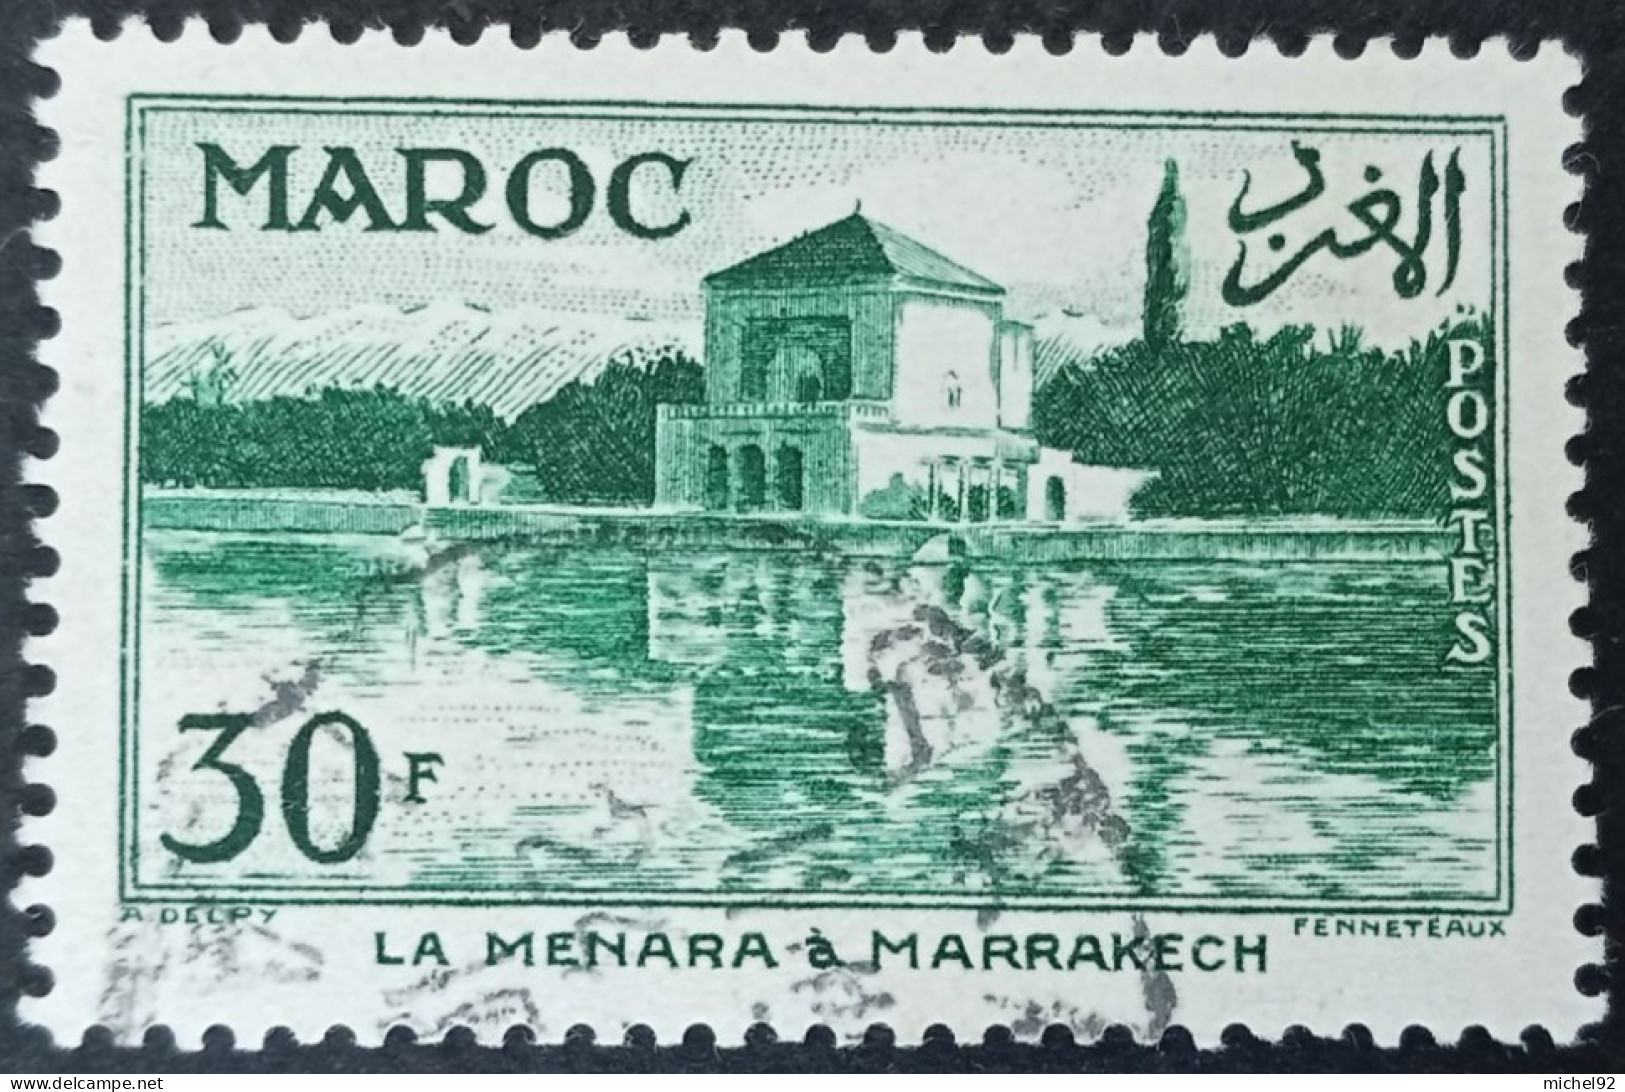 Maroc 1955-56 - YT N°358 - Oblitéré - Used Stamps